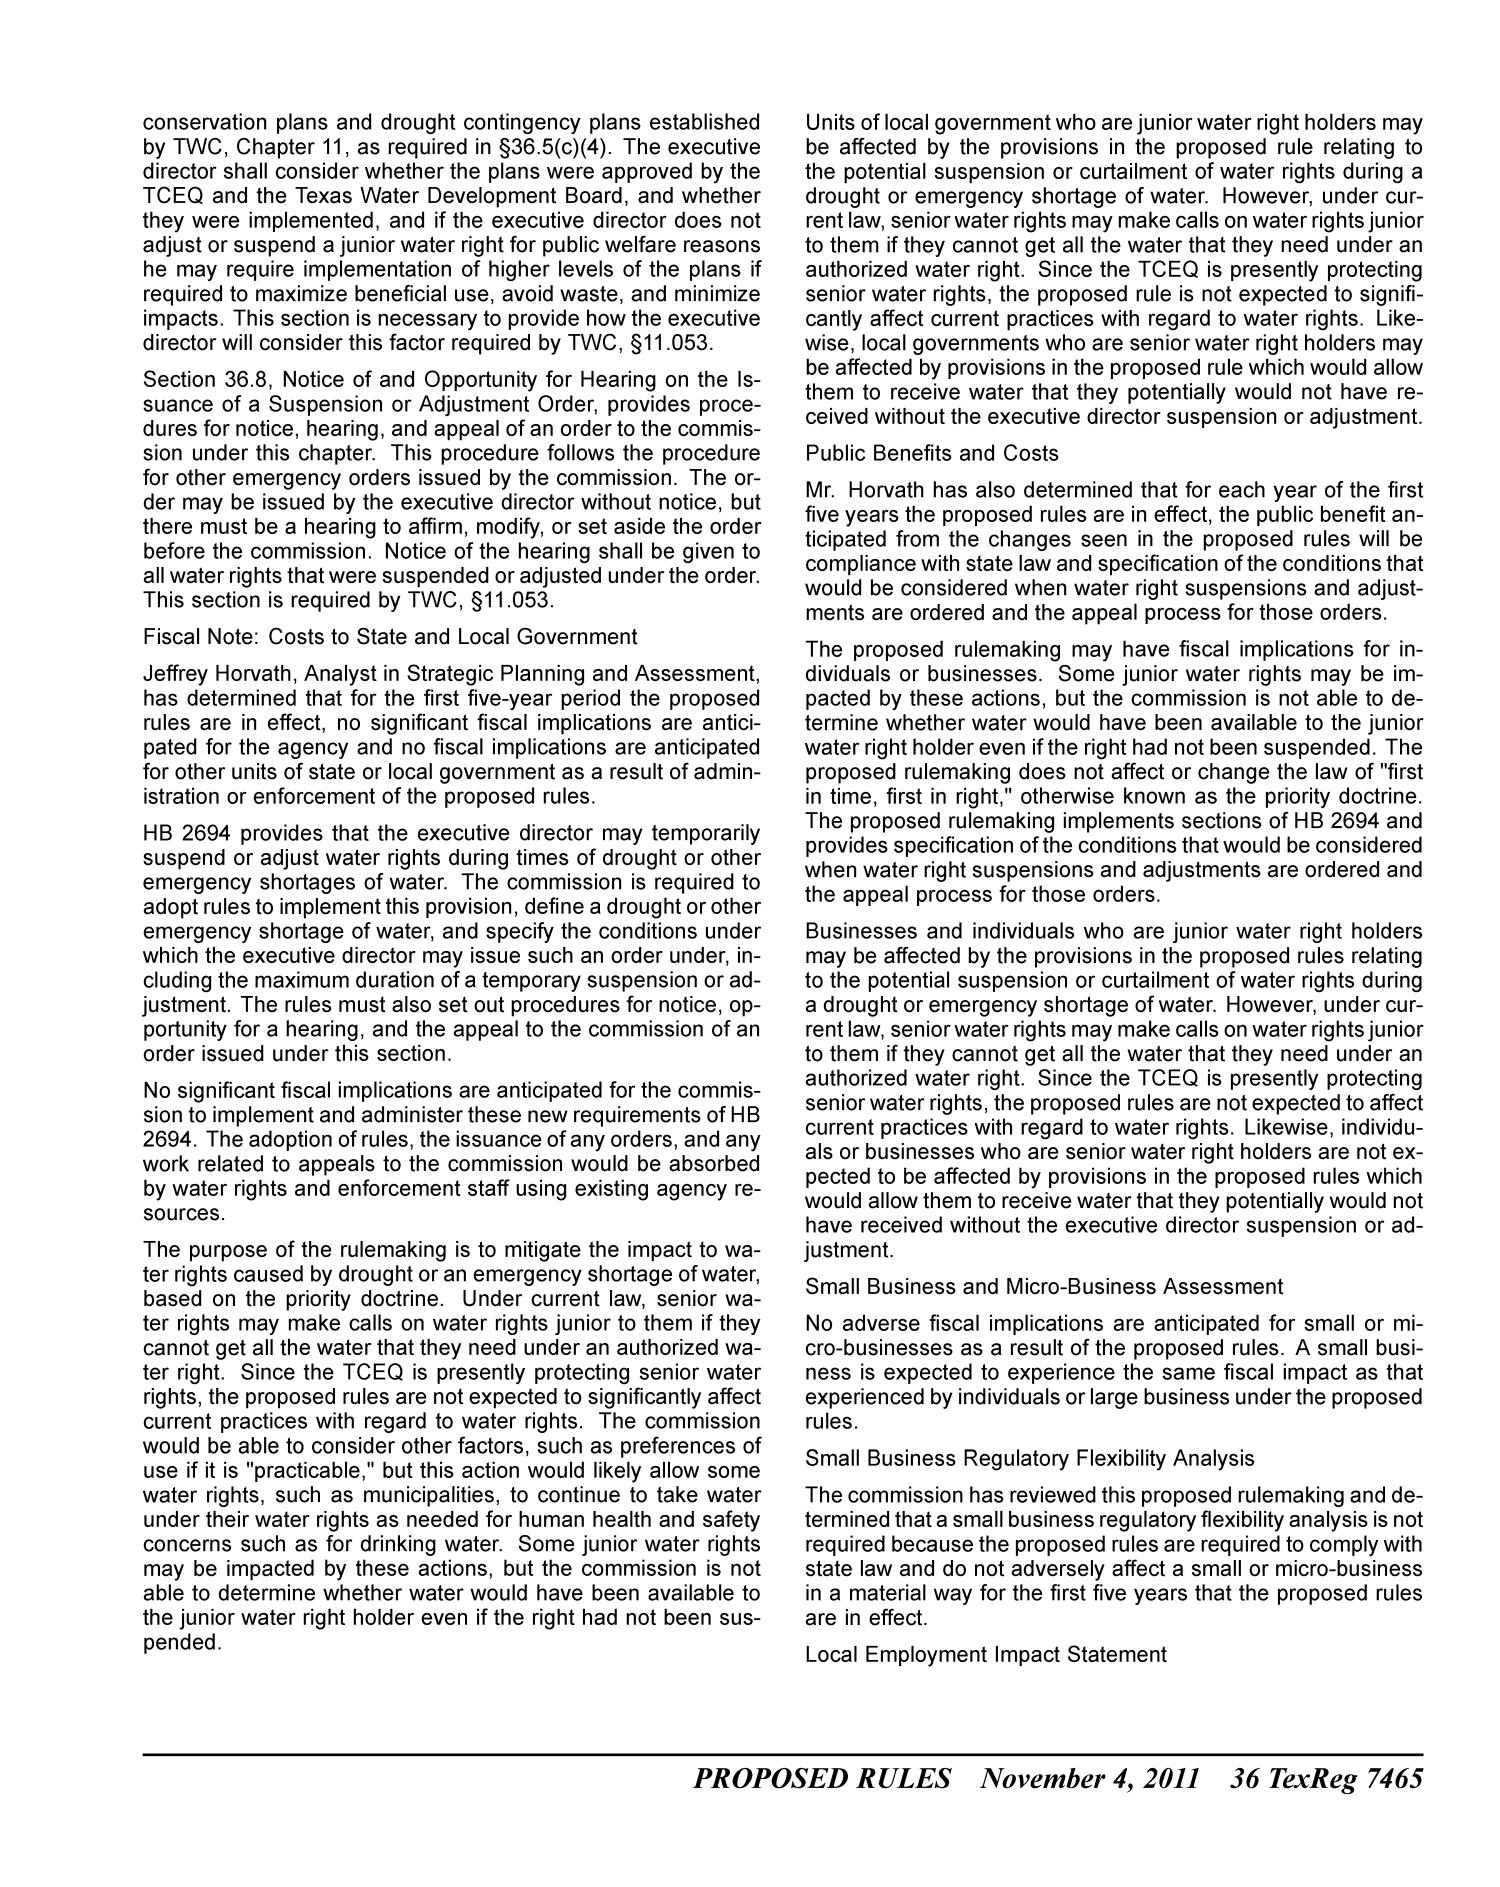 Texas Register, Volume 36, Number 44, Pages 7417-7610, November 4, 2011
                                                
                                                    7465
                                                